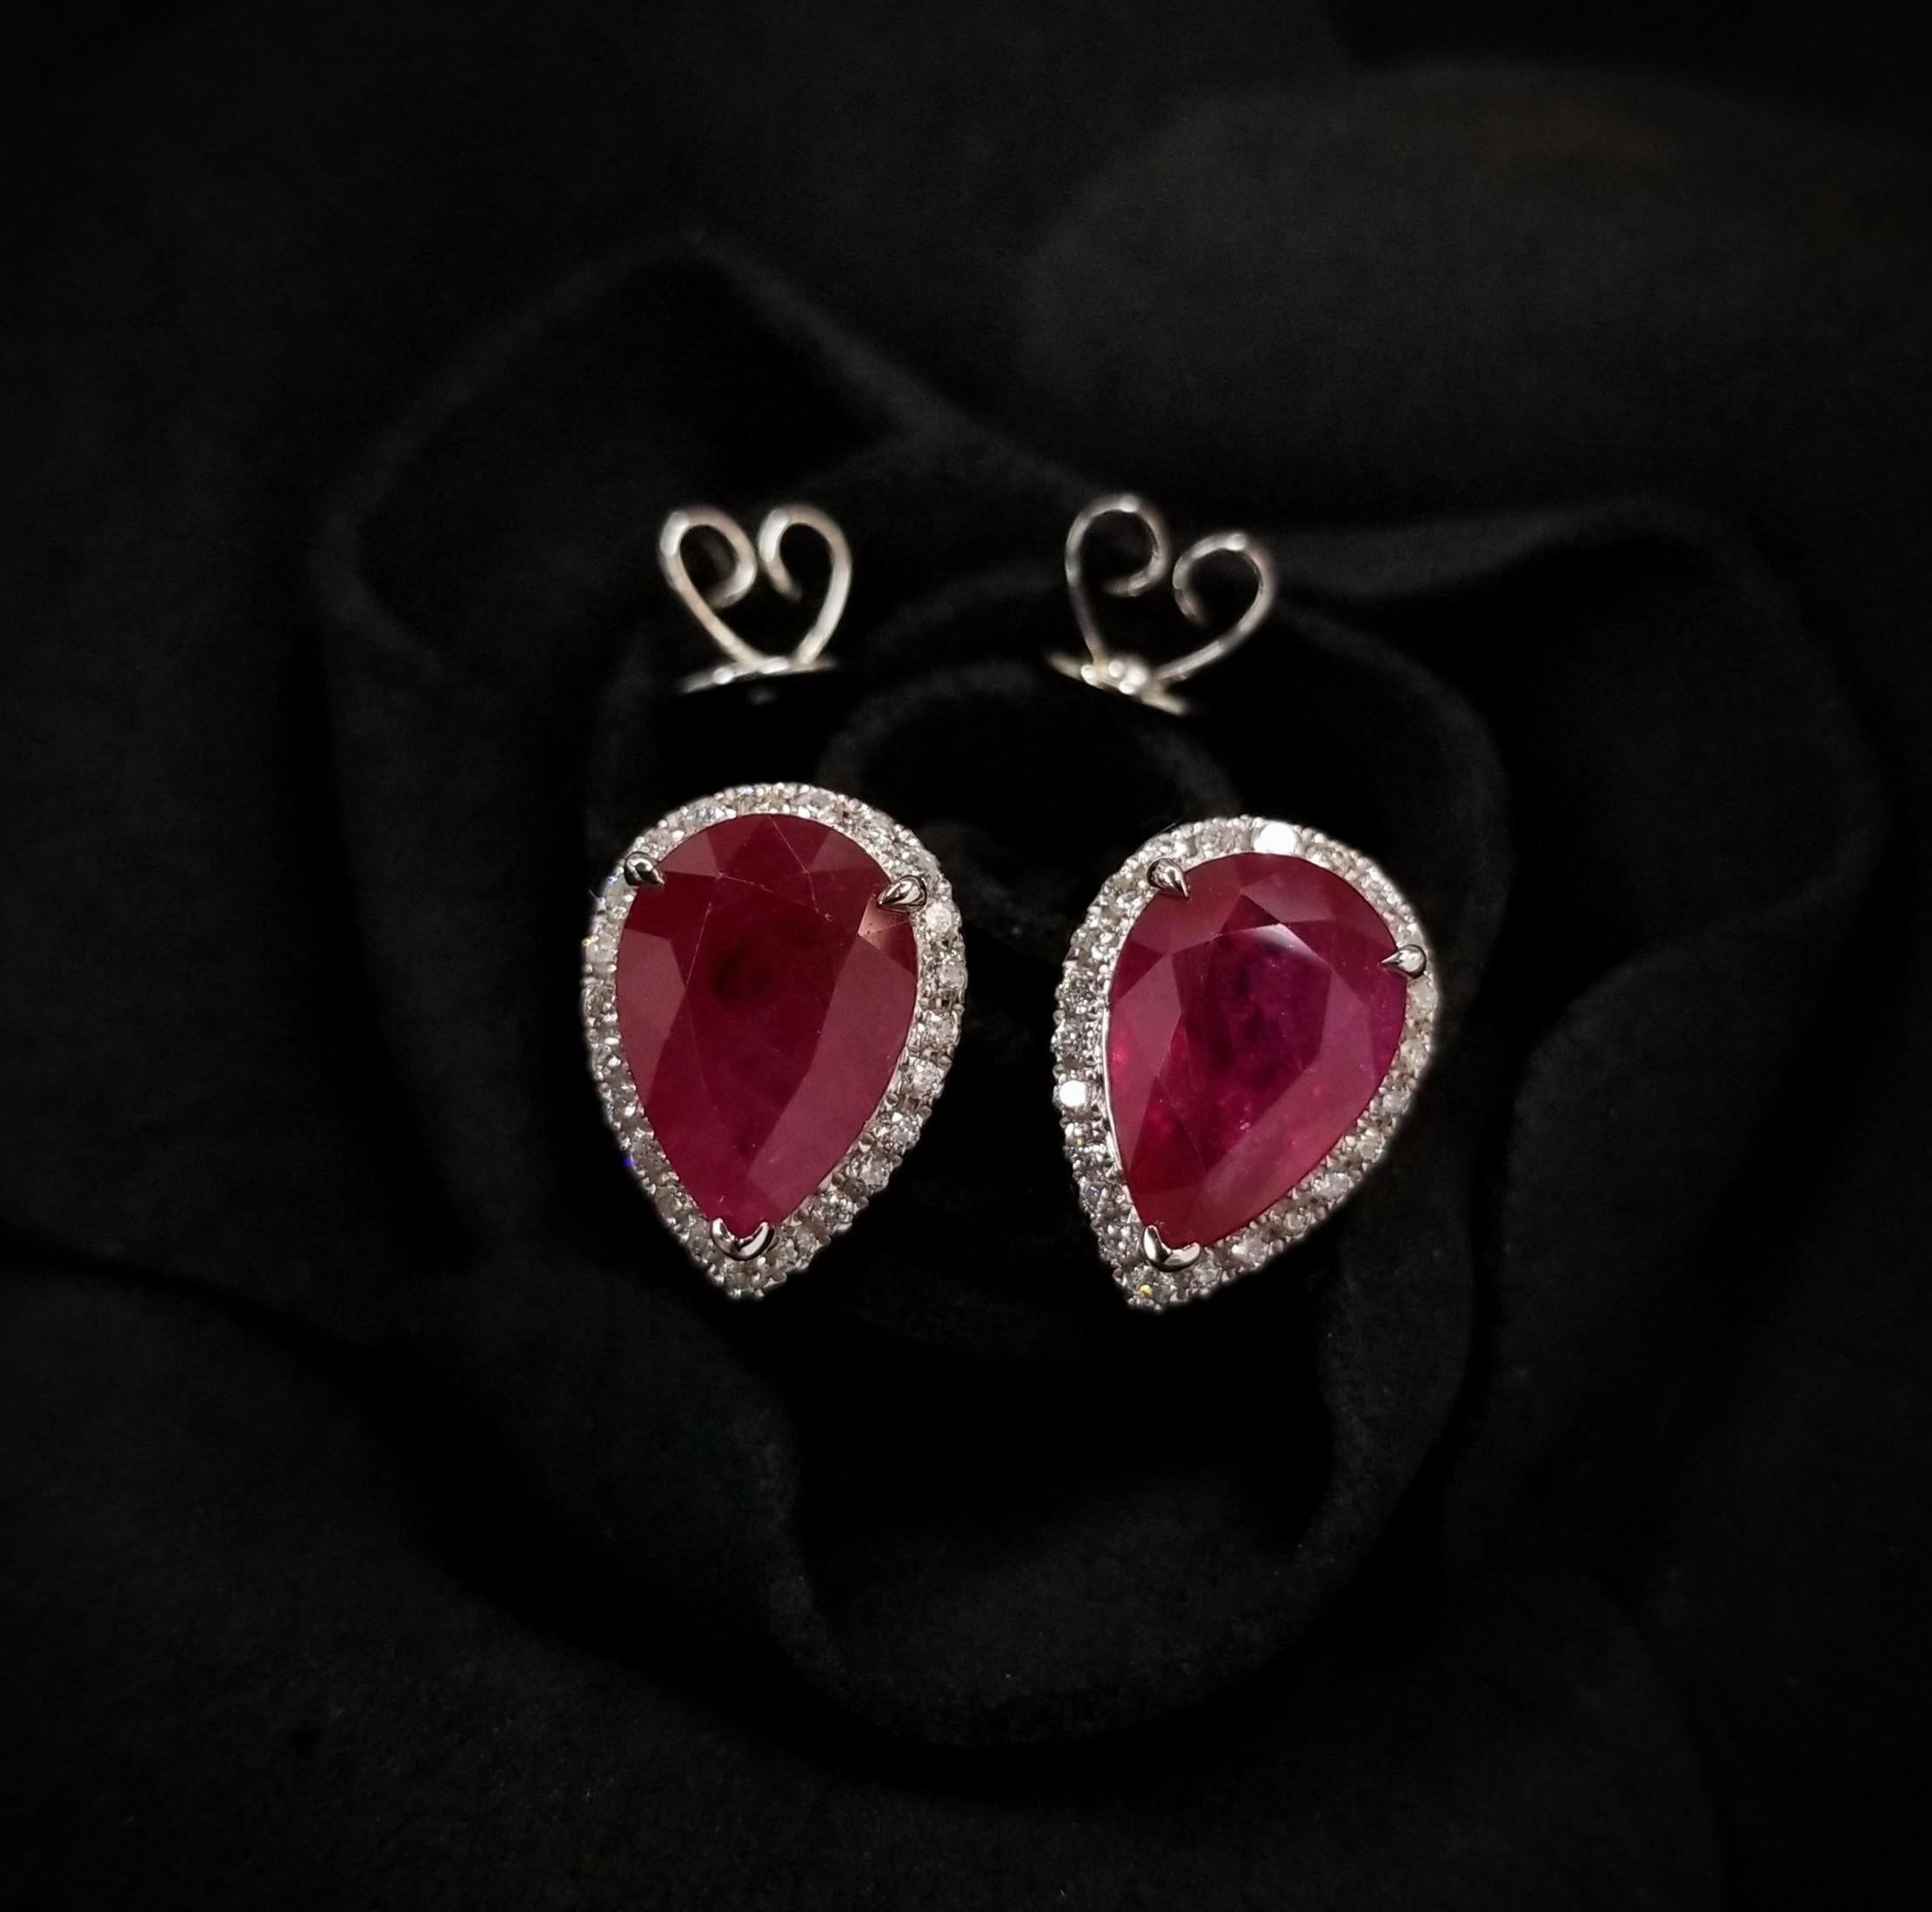 Cette paire de boucles d'oreilles sensationnelle est ornée de rubis certifiés IGI de 4,10 carats, exceptionnellement rares, de couleur rouge violacé intense et de forme poire captivante. Ces pierres précieuses exquises, connues pour leur rareté et